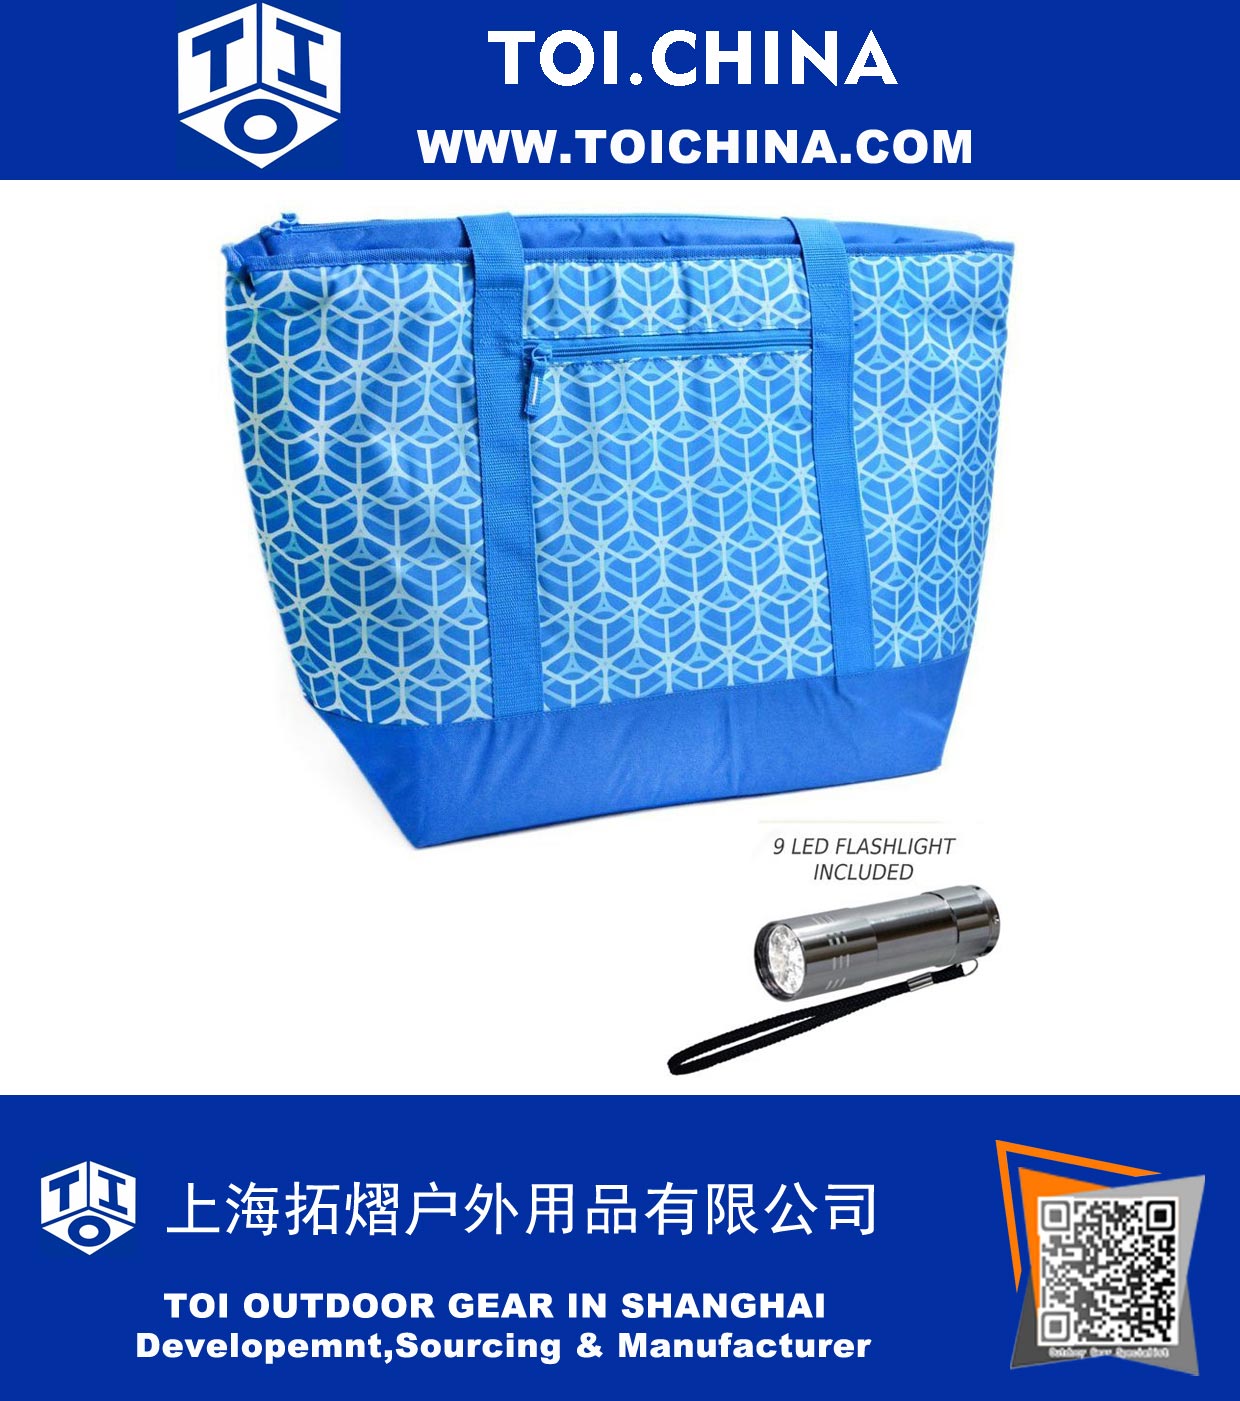 Cooler Insulated Mega Tote Bag XXL - способ транспортировки замороженных продуктов, скоропортящихся продуктов и горячей еды, включая 9 светодиодных фонарей